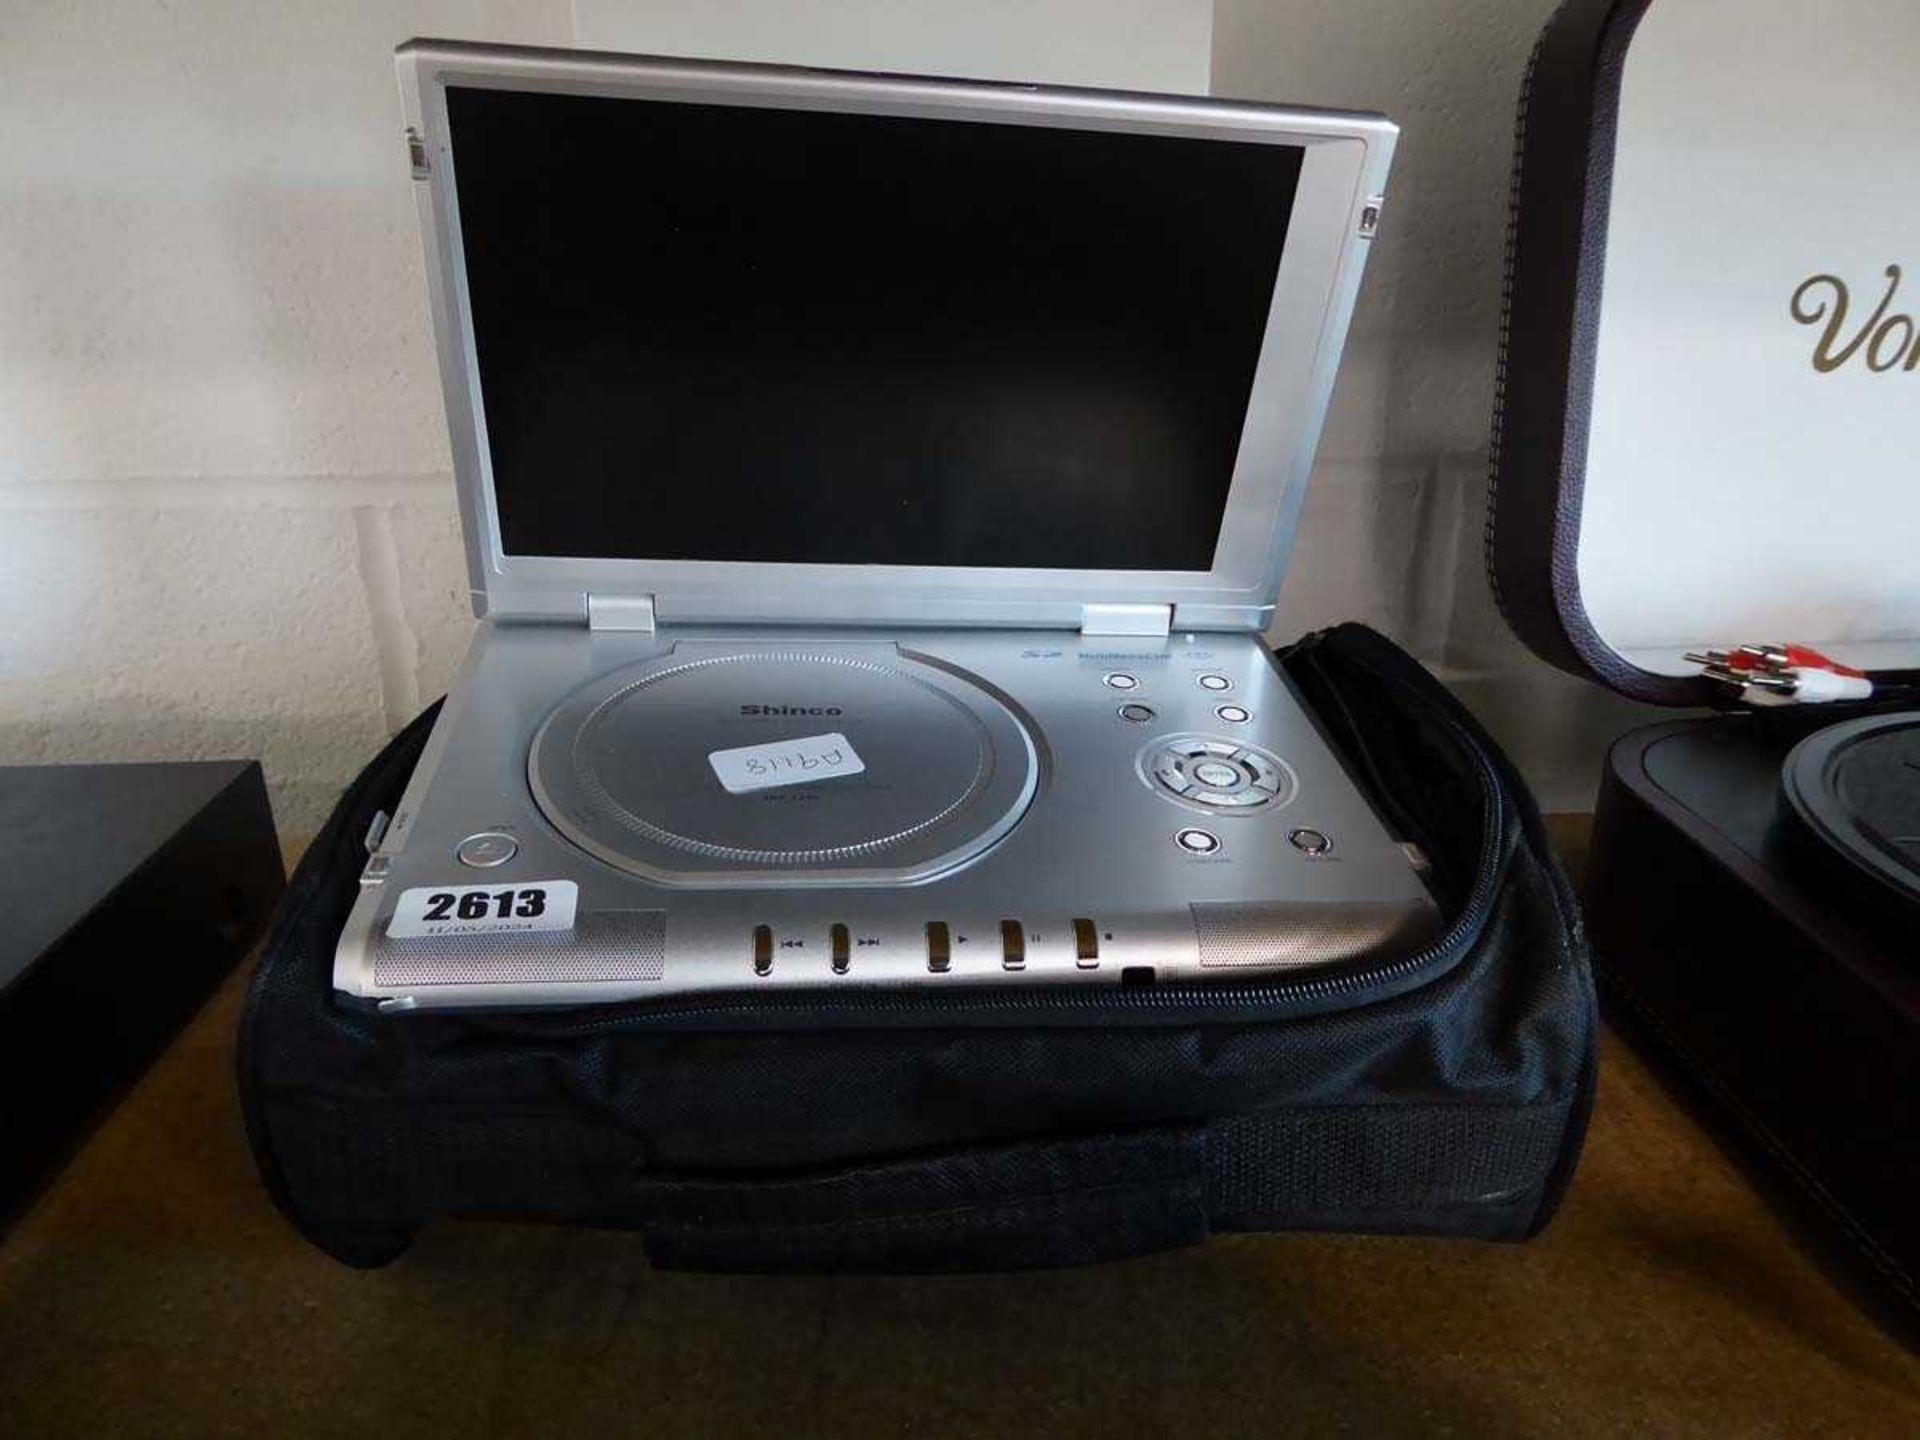 Shinco portable DVD player SDP1250